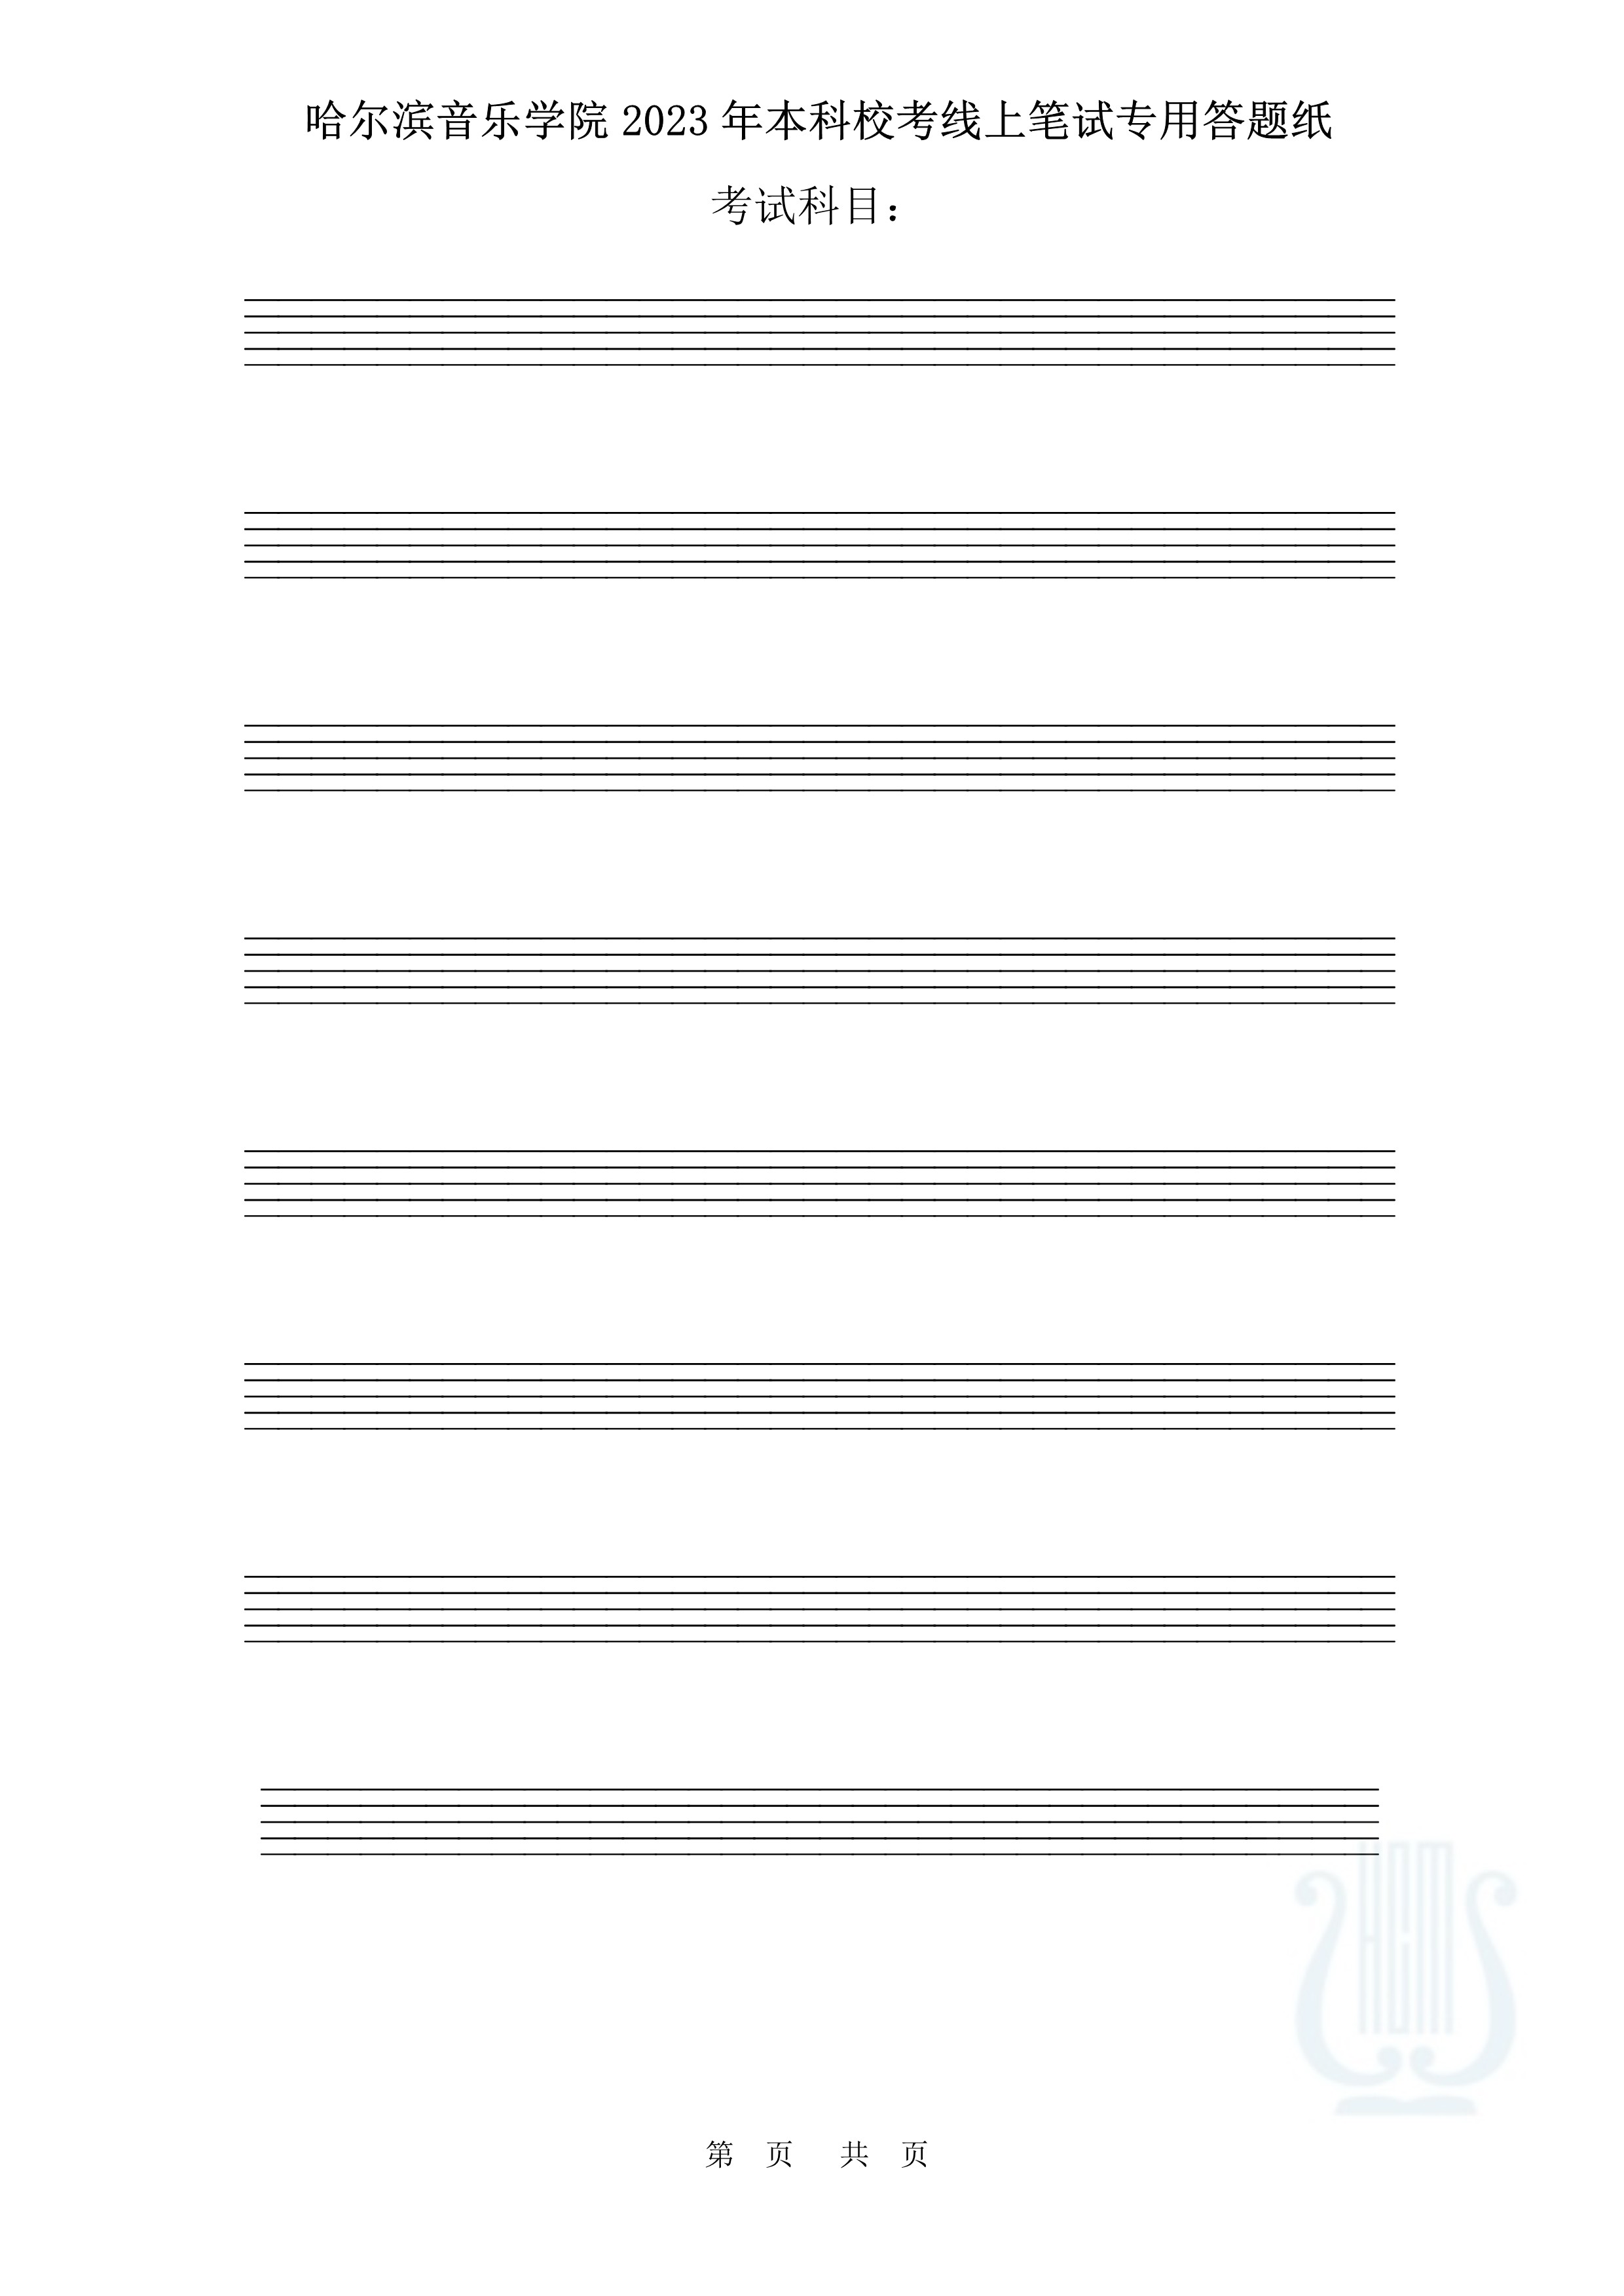 哈尔滨音乐学院2023年本科校考线上笔试答题纸（作曲与作曲技术理论）_6.jpg